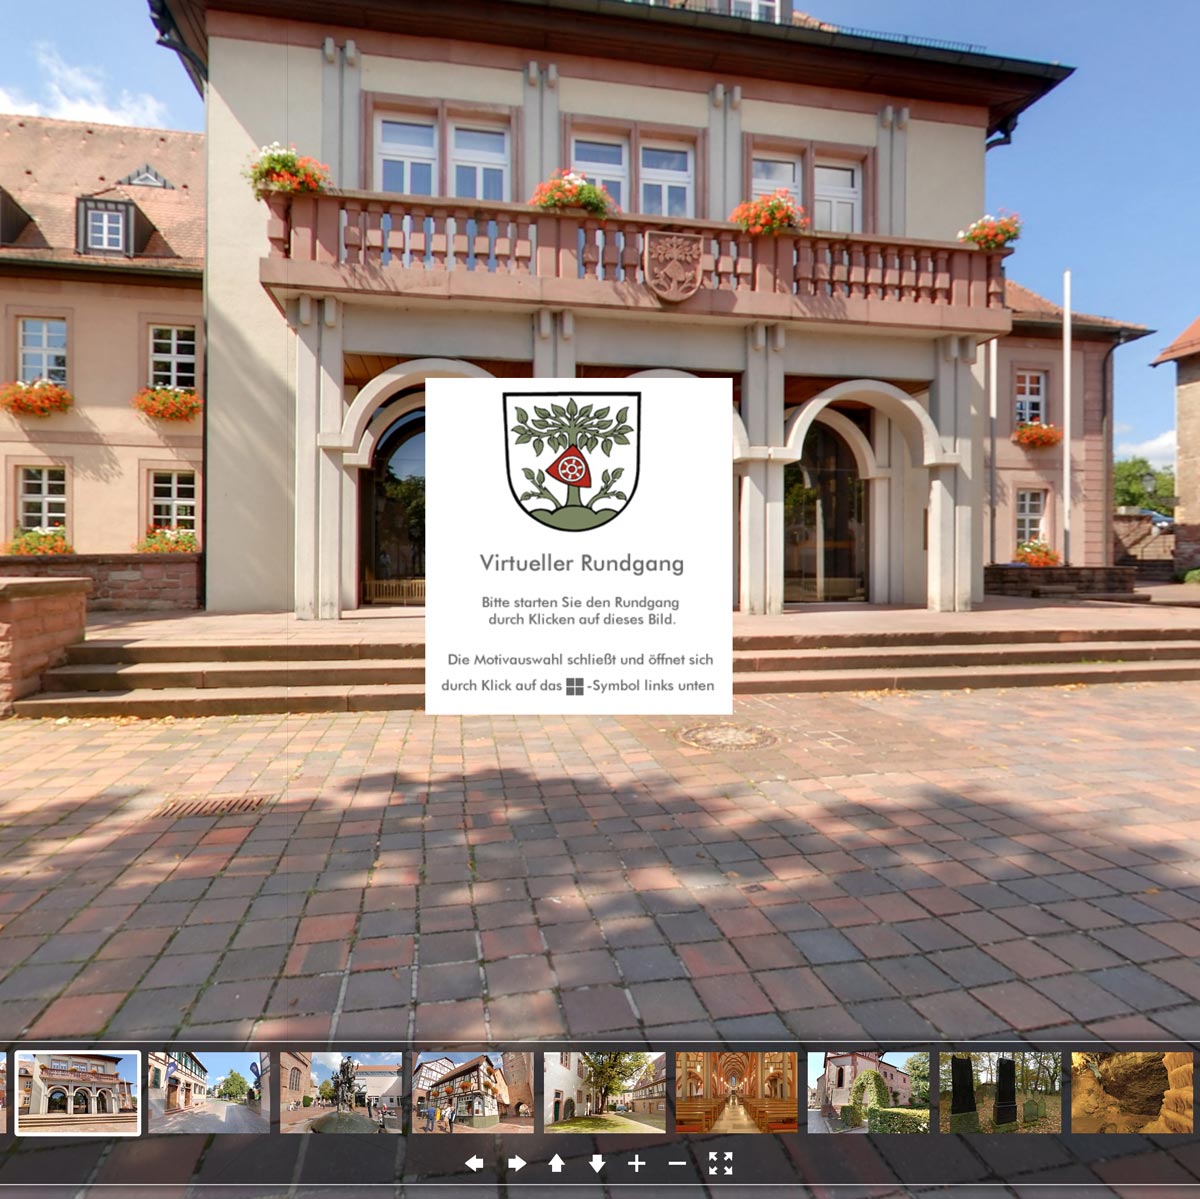 Virtueller Rundgang durch die Stadt Buchen im Odenwald